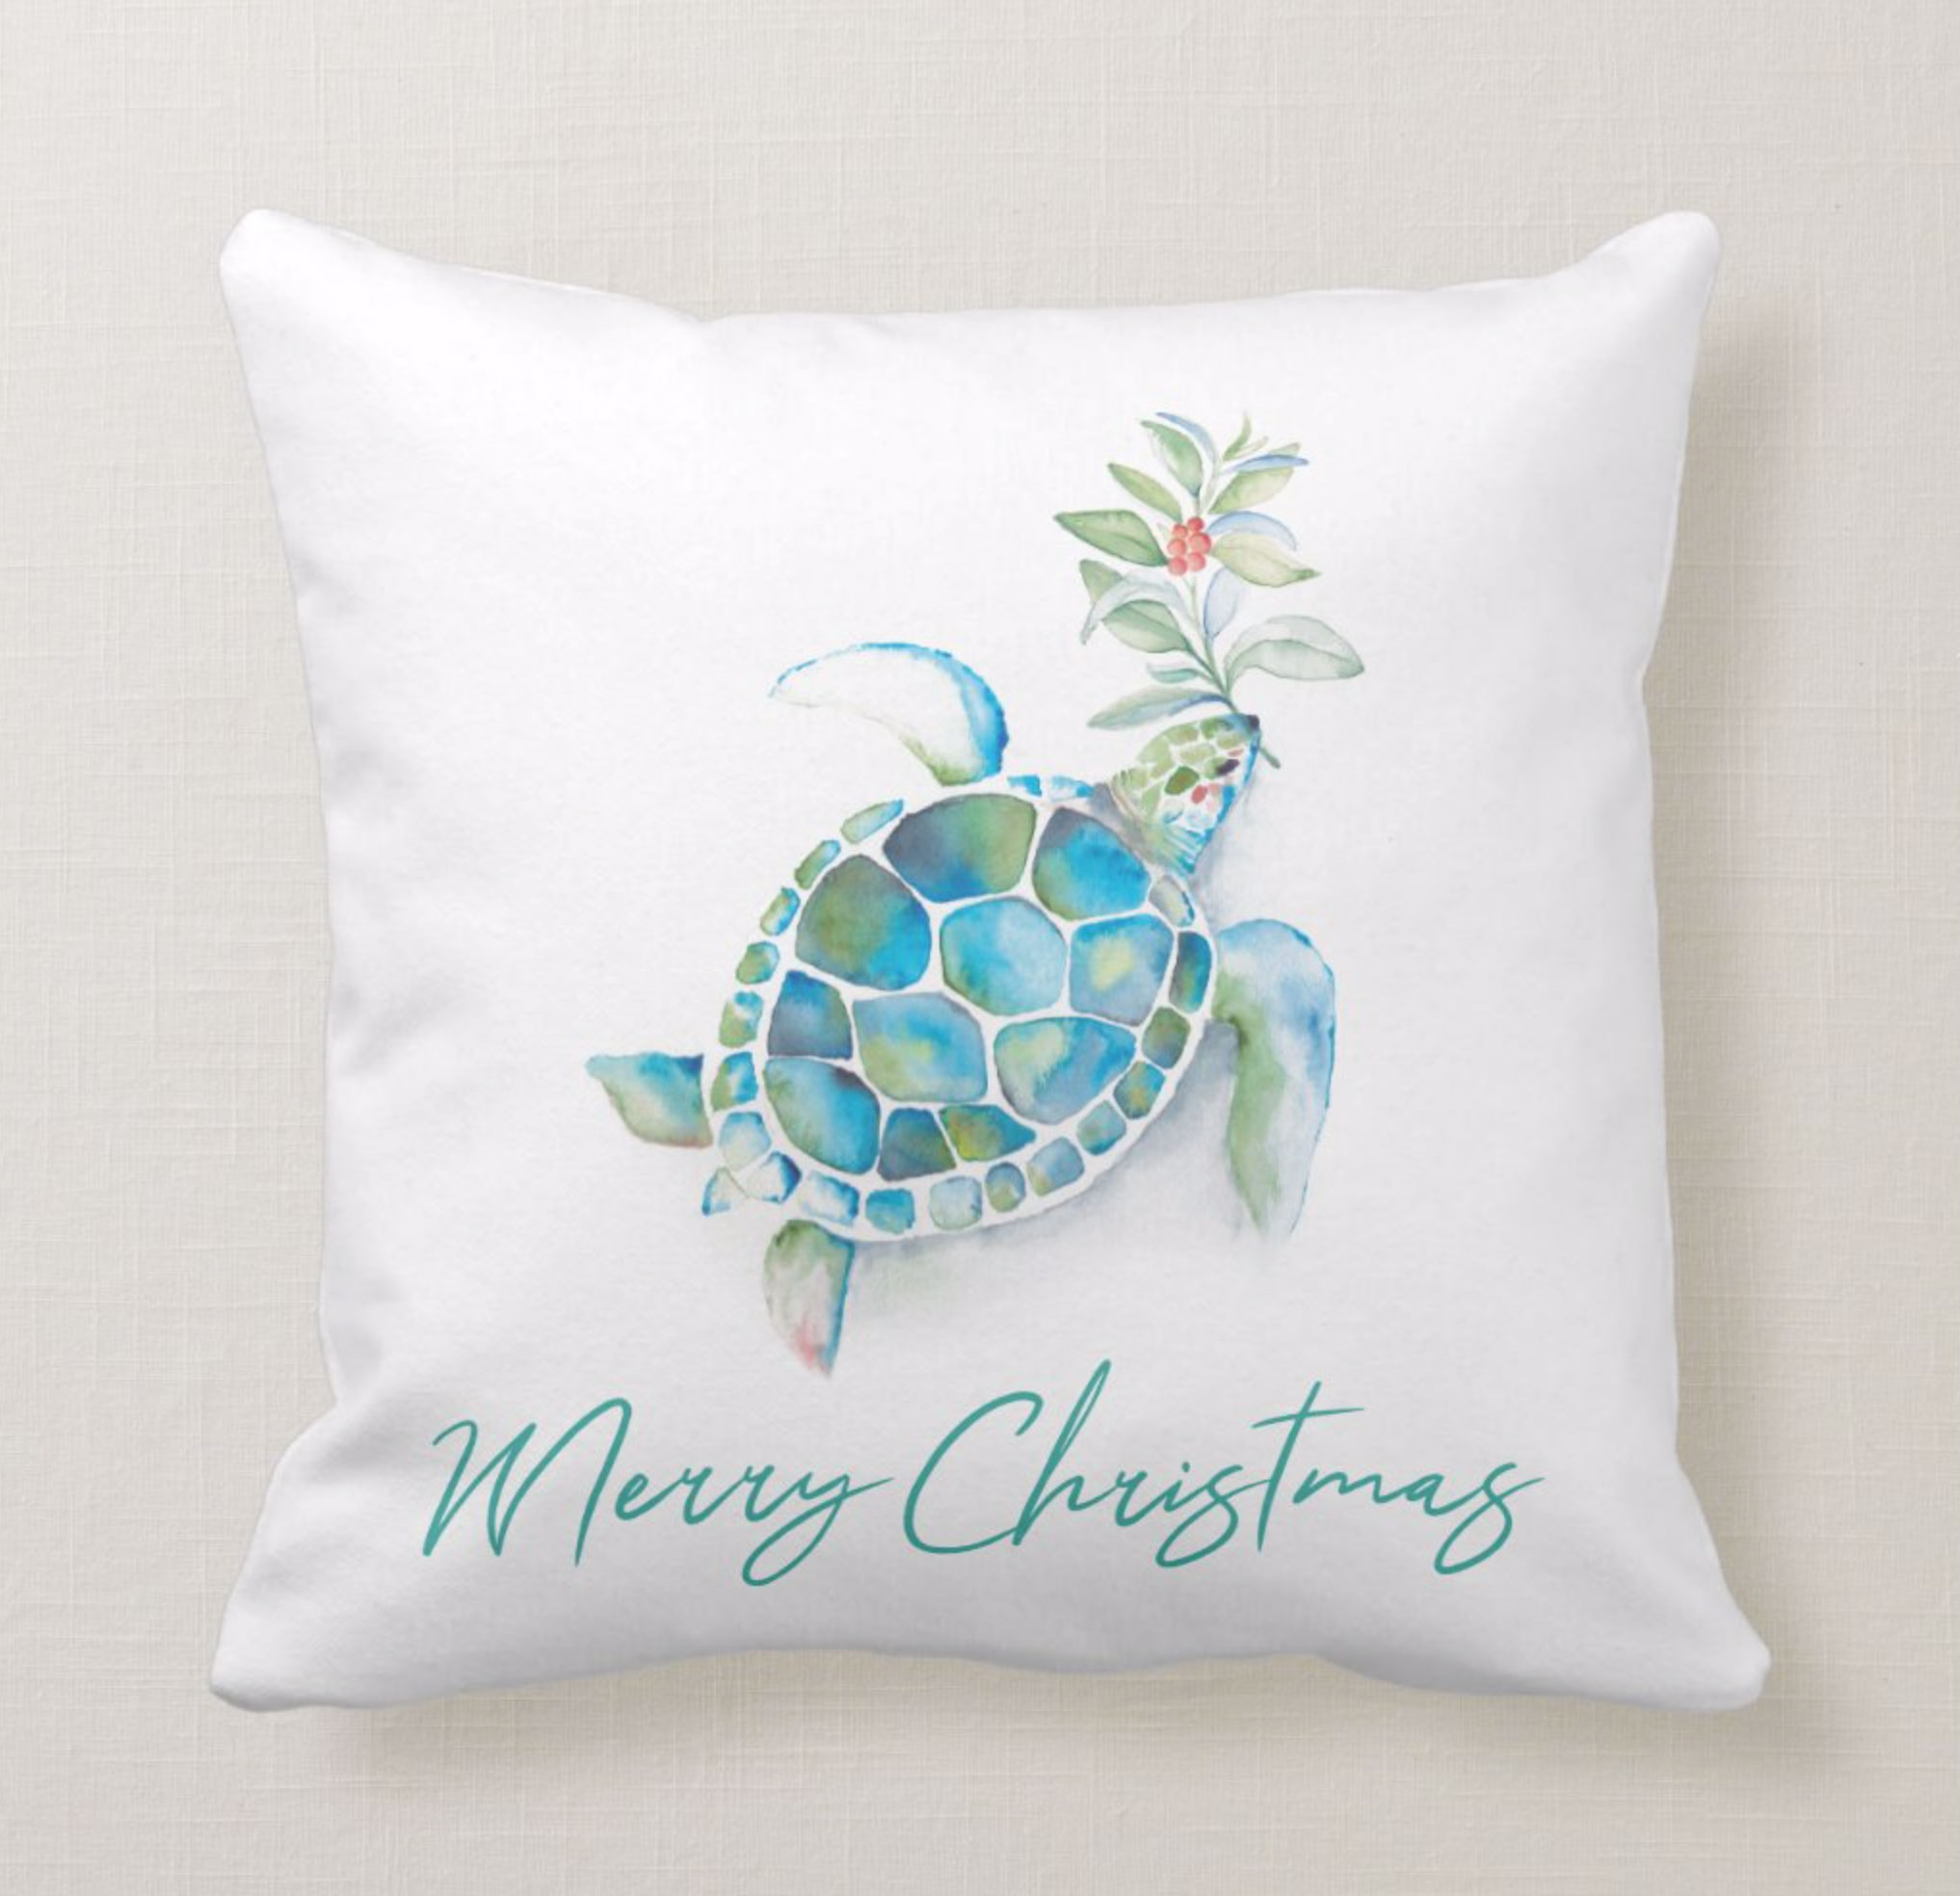 Coastal Christmas Decor. Click to shop this sea turtle throw pillow.